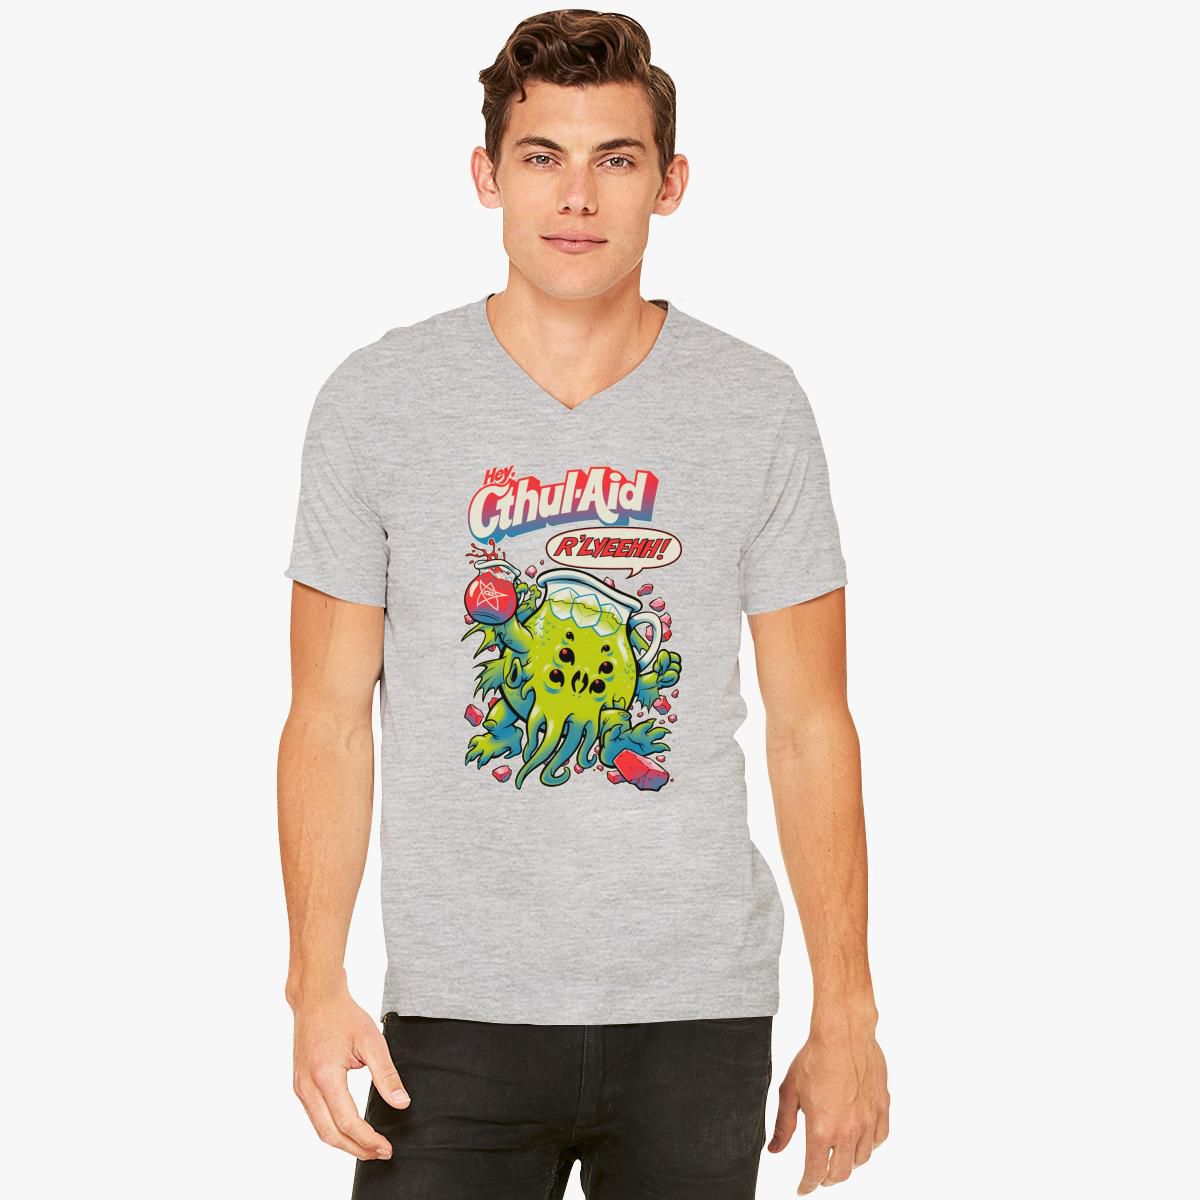 Kool-Aid Man Cthul-Aid V-Neck T-shirt - Customon Kool Aid Shirt